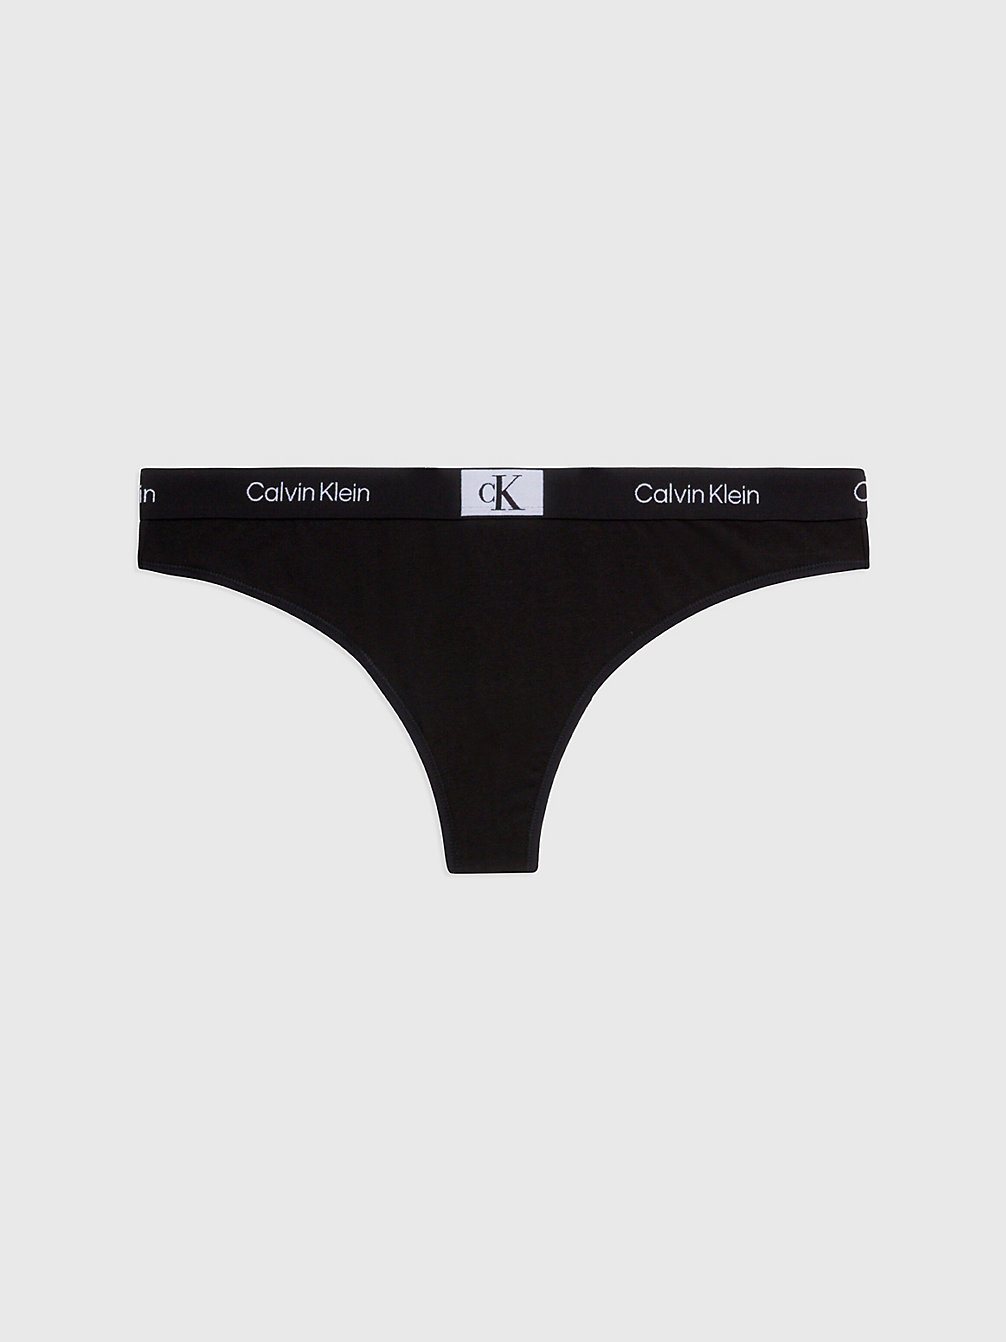 BLACK String Grande Taille - Ck96 undefined femmes Calvin Klein